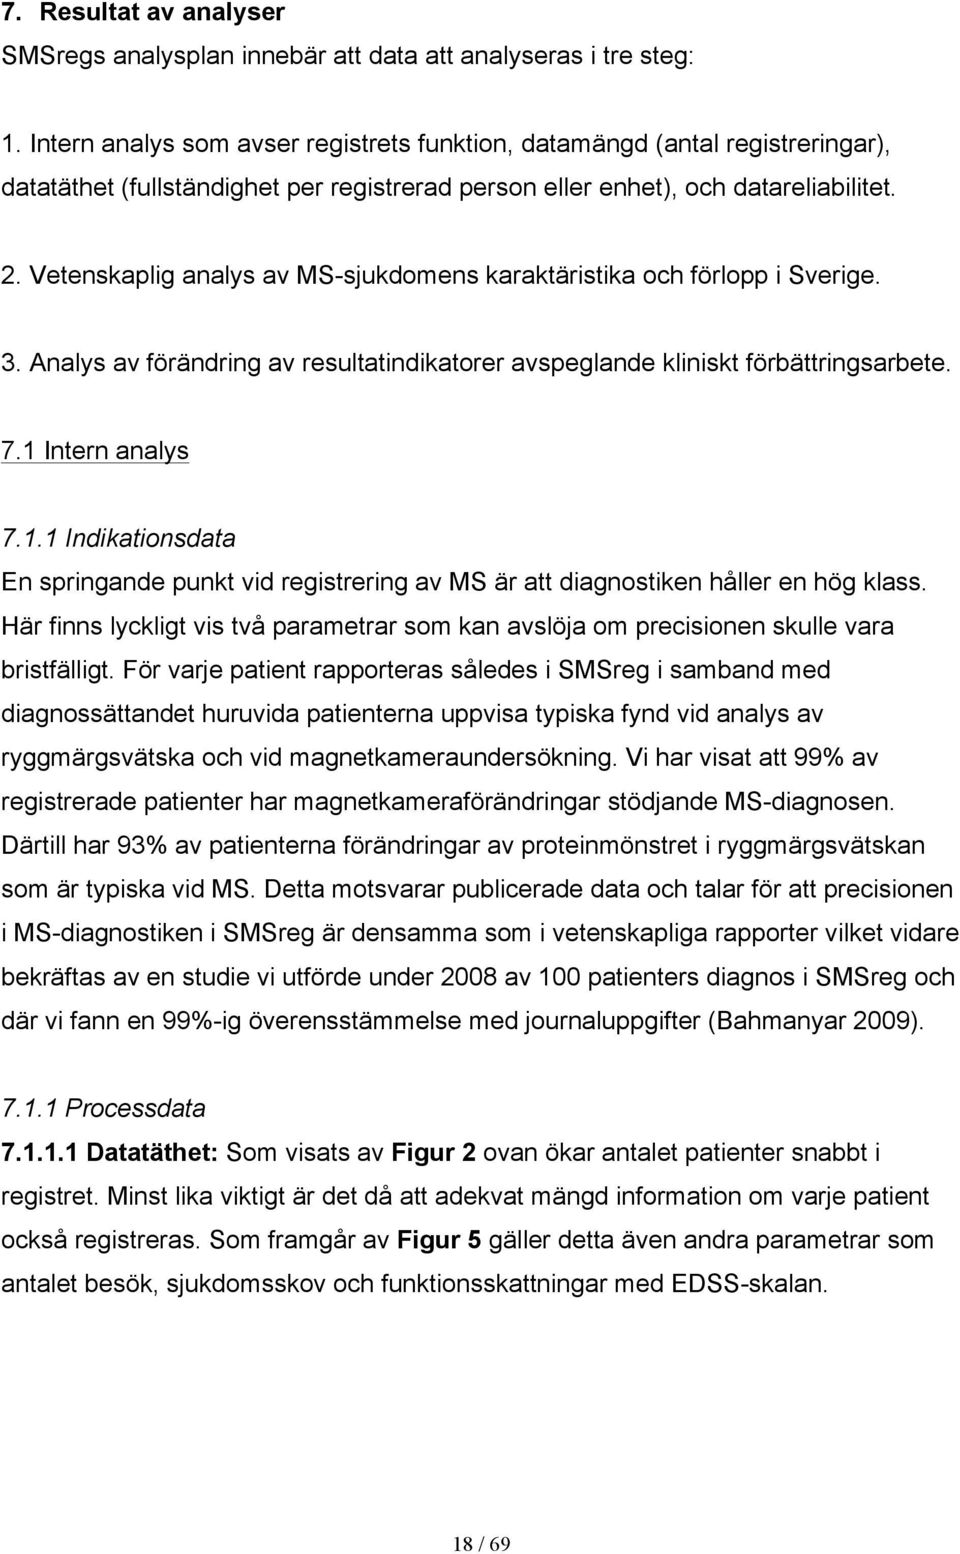 Vetenskaplig analys av MS-sjukdomens karaktäristika och förlopp i Sverige. 3. Analys av förändring av resultatindikatorer avspeglande kliniskt förbättringsarbete. 7.1 